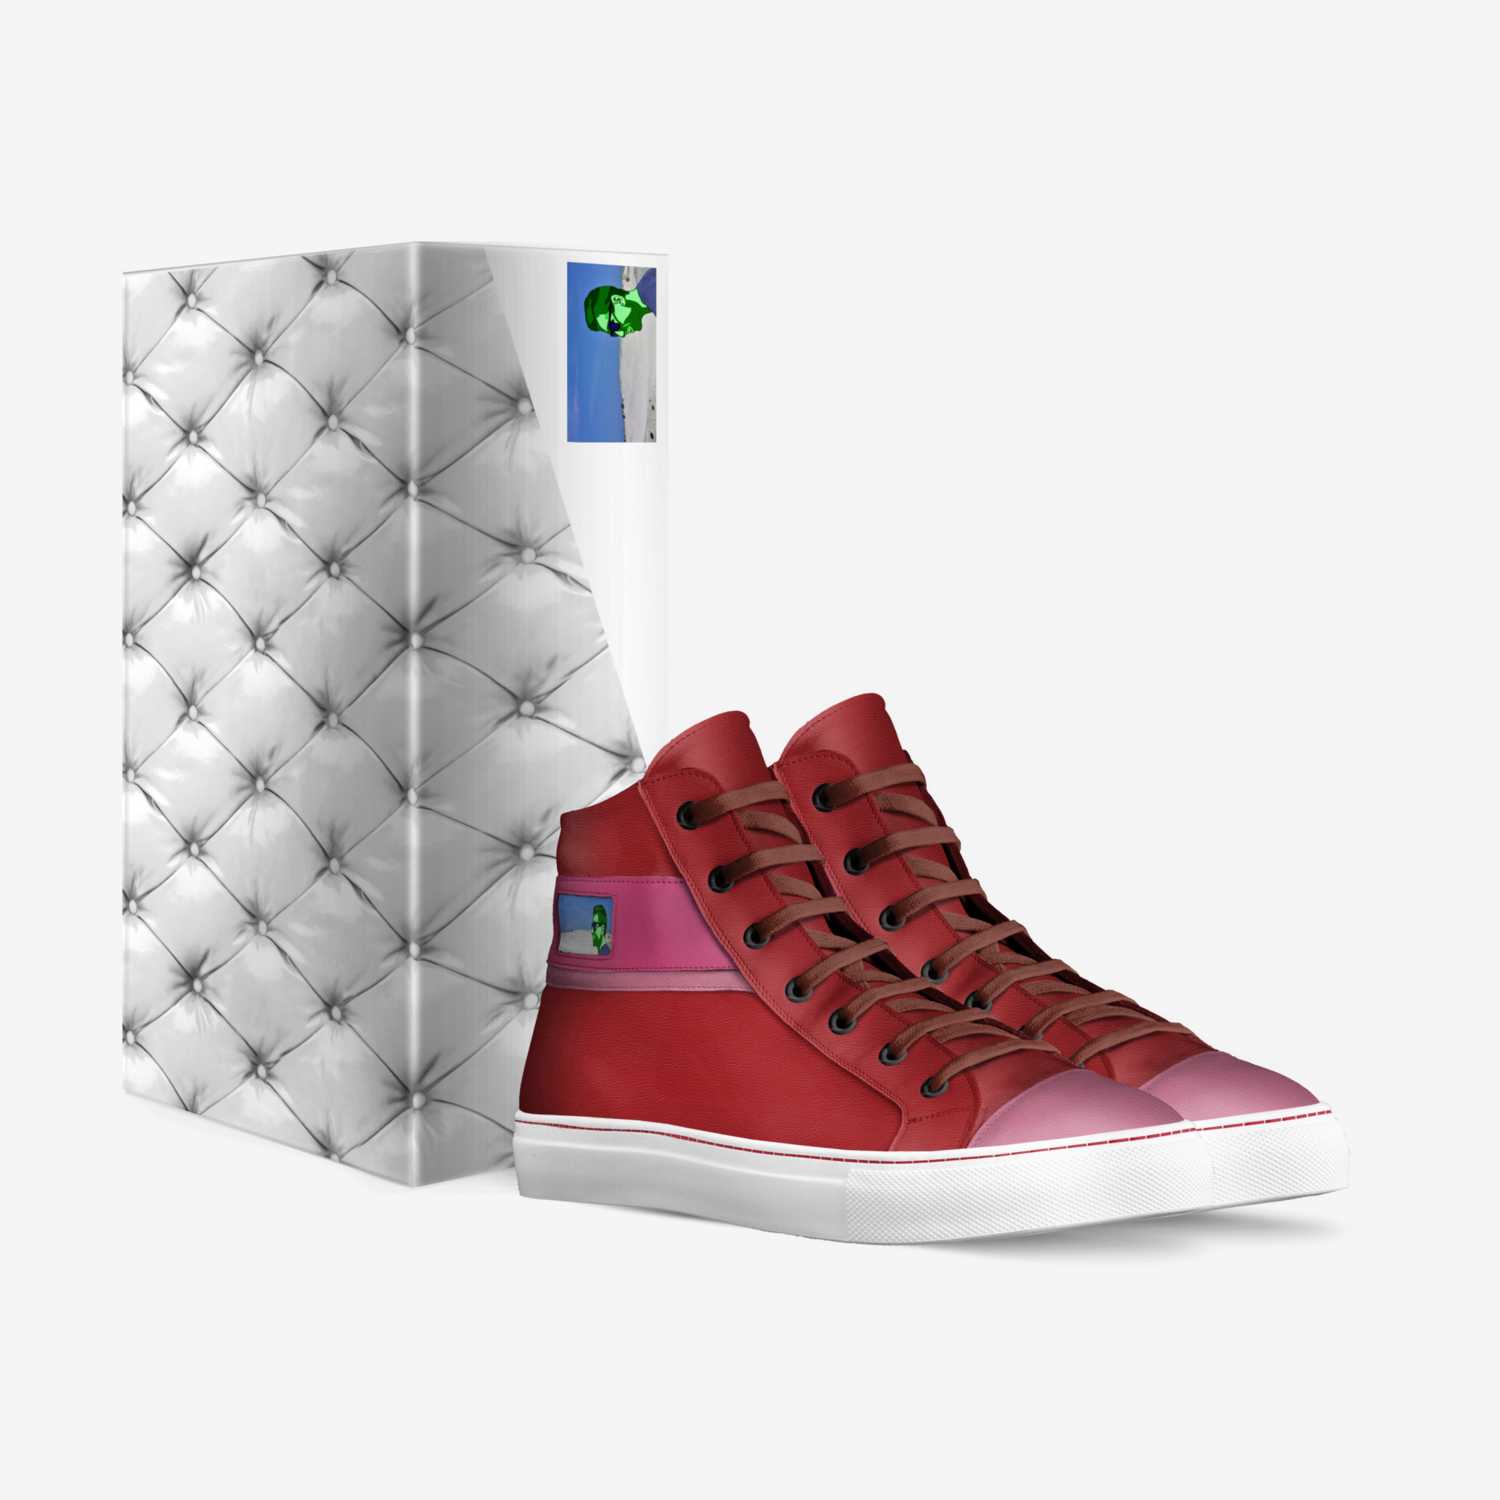 JOJO custom made in Italy shoes by Jony | Box view